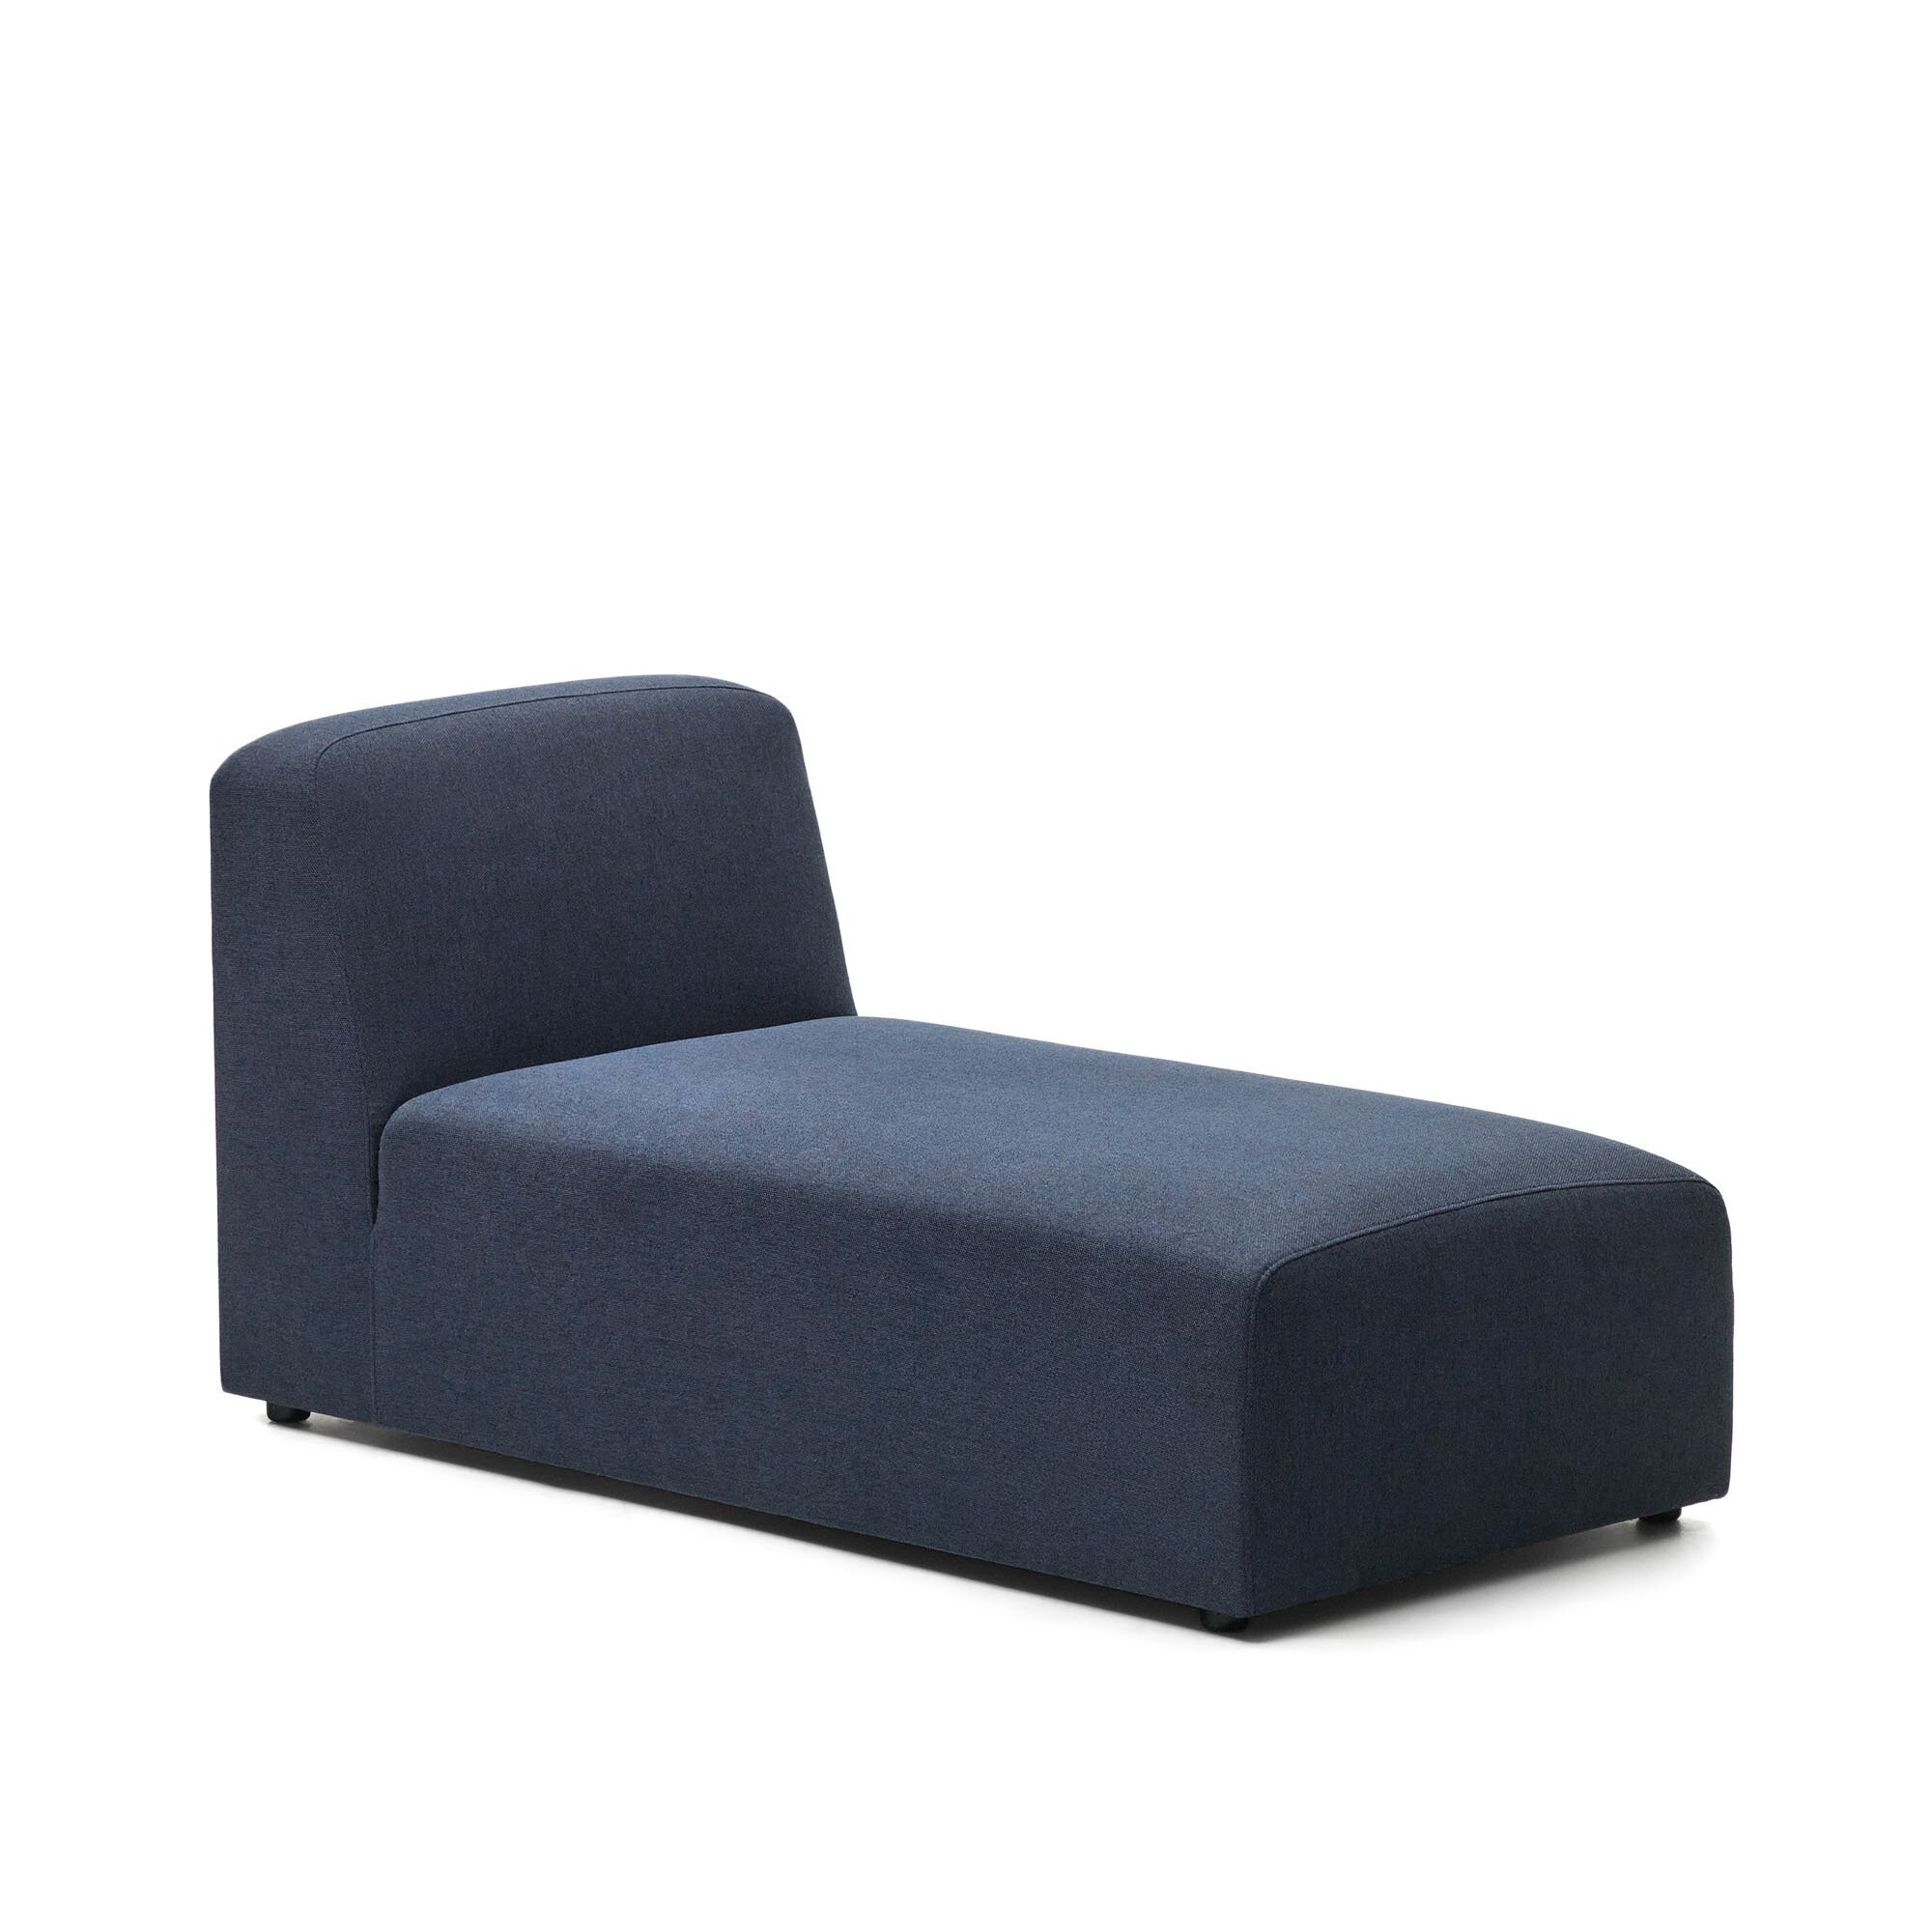 Blauw Neom chaise longue module 152 x 75 cm